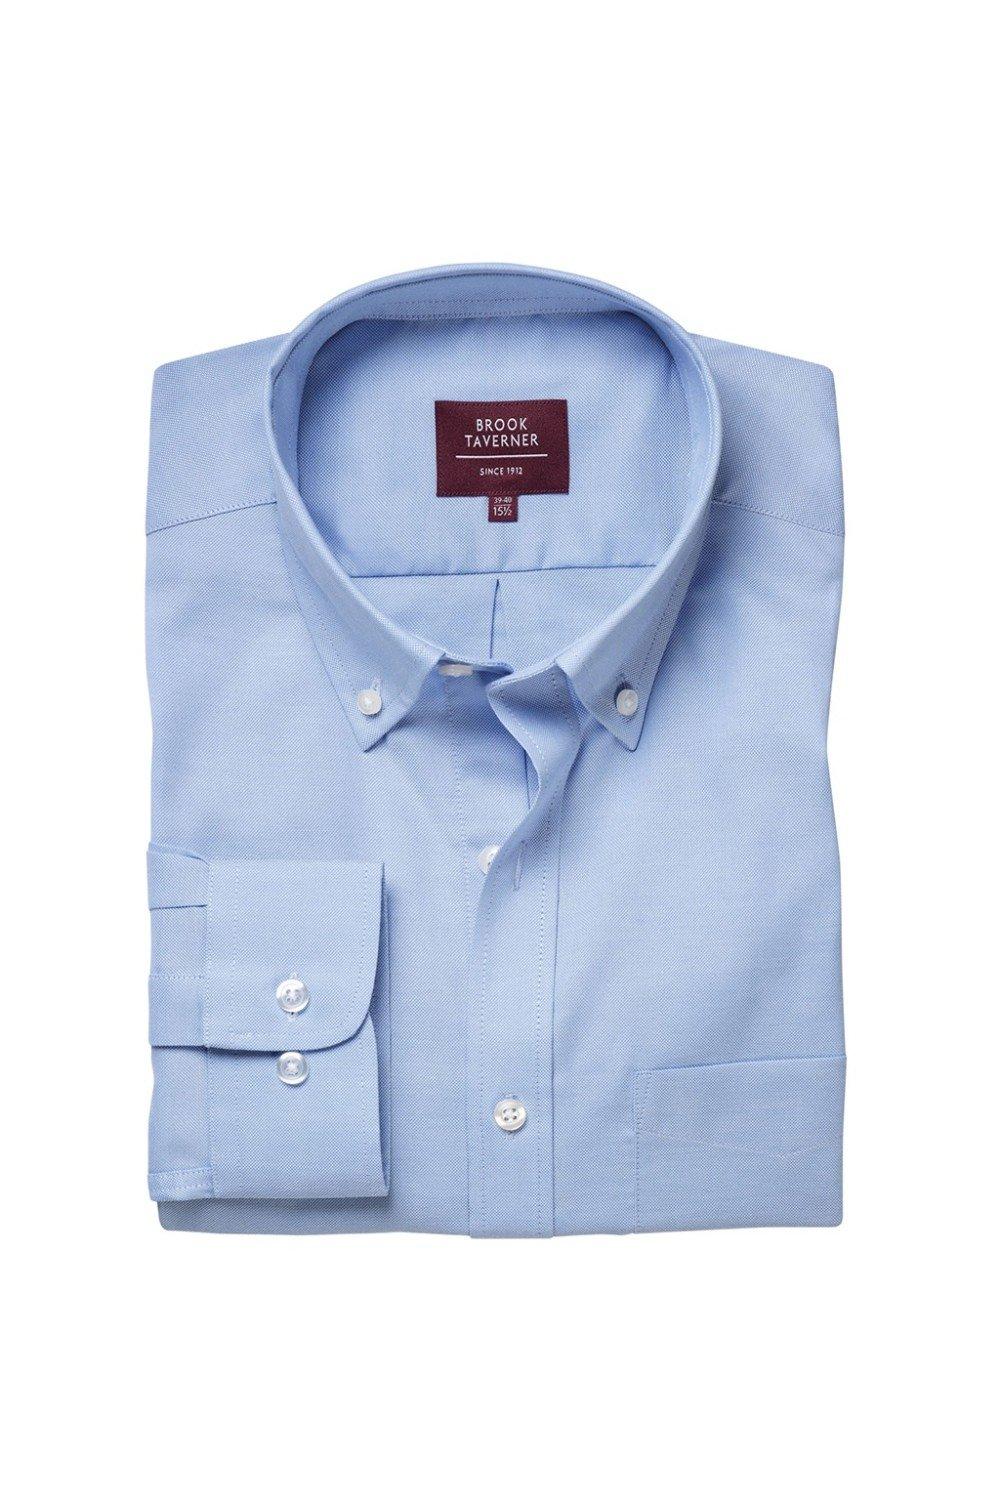 whistler long-sleeved formal shirt